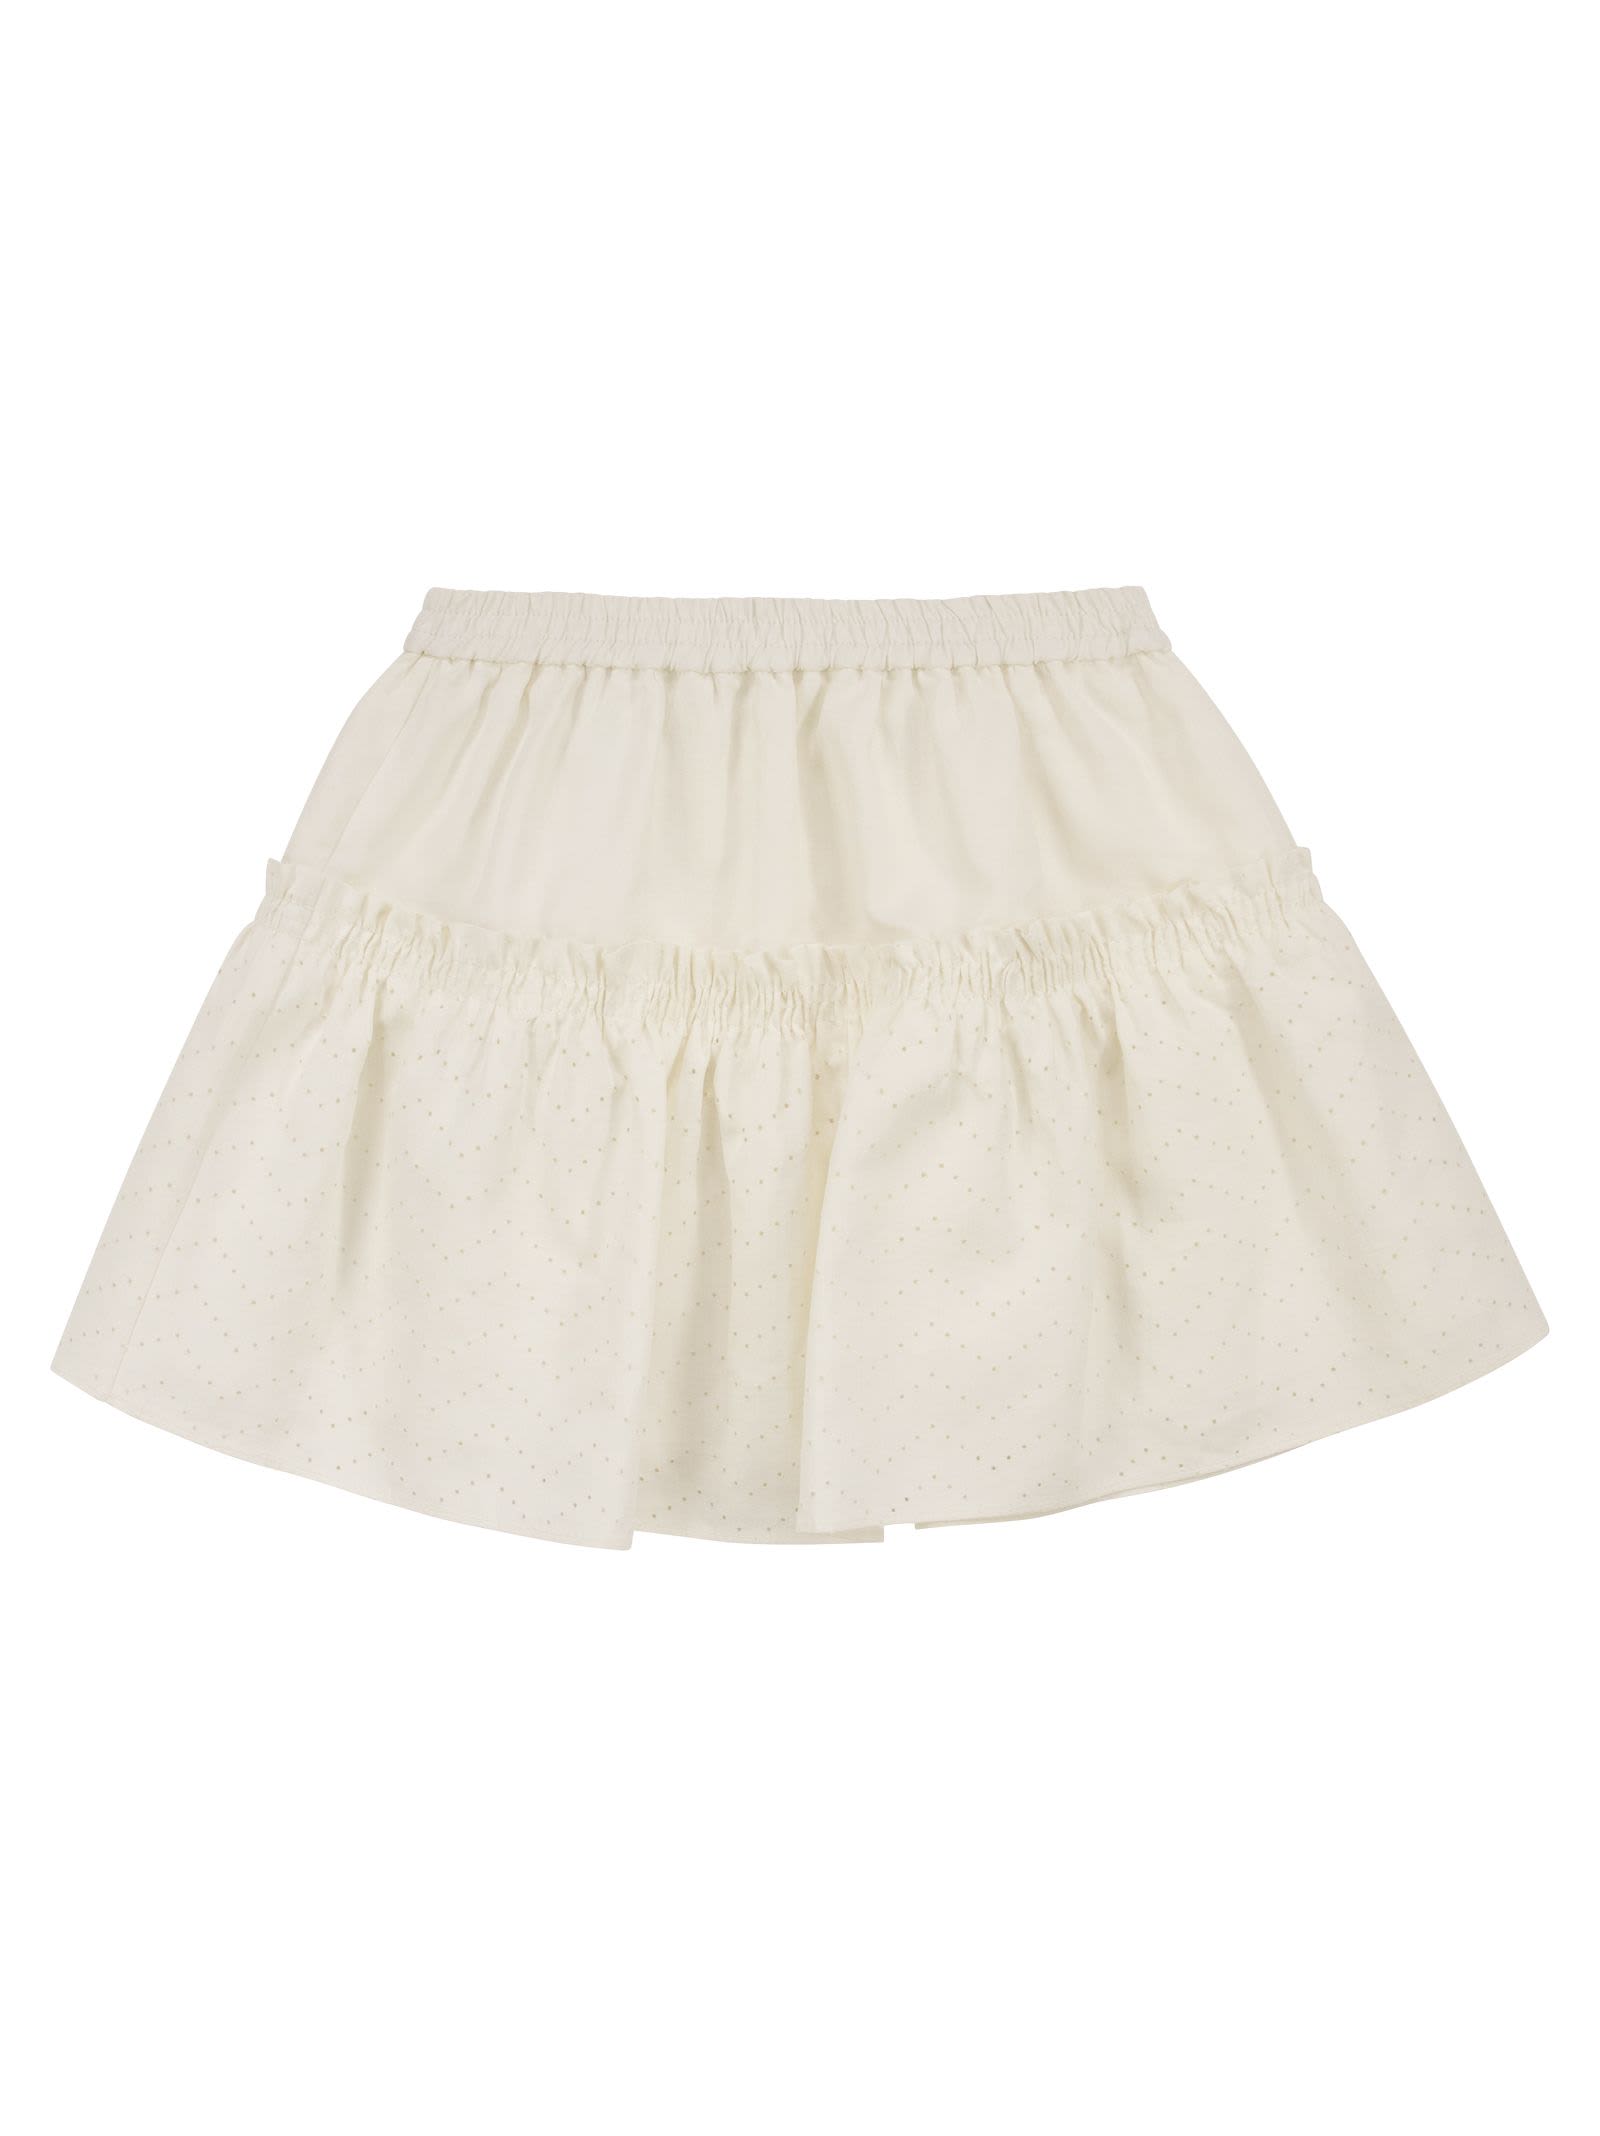 Brunello Cucinelli Linen Skirt With Flounce